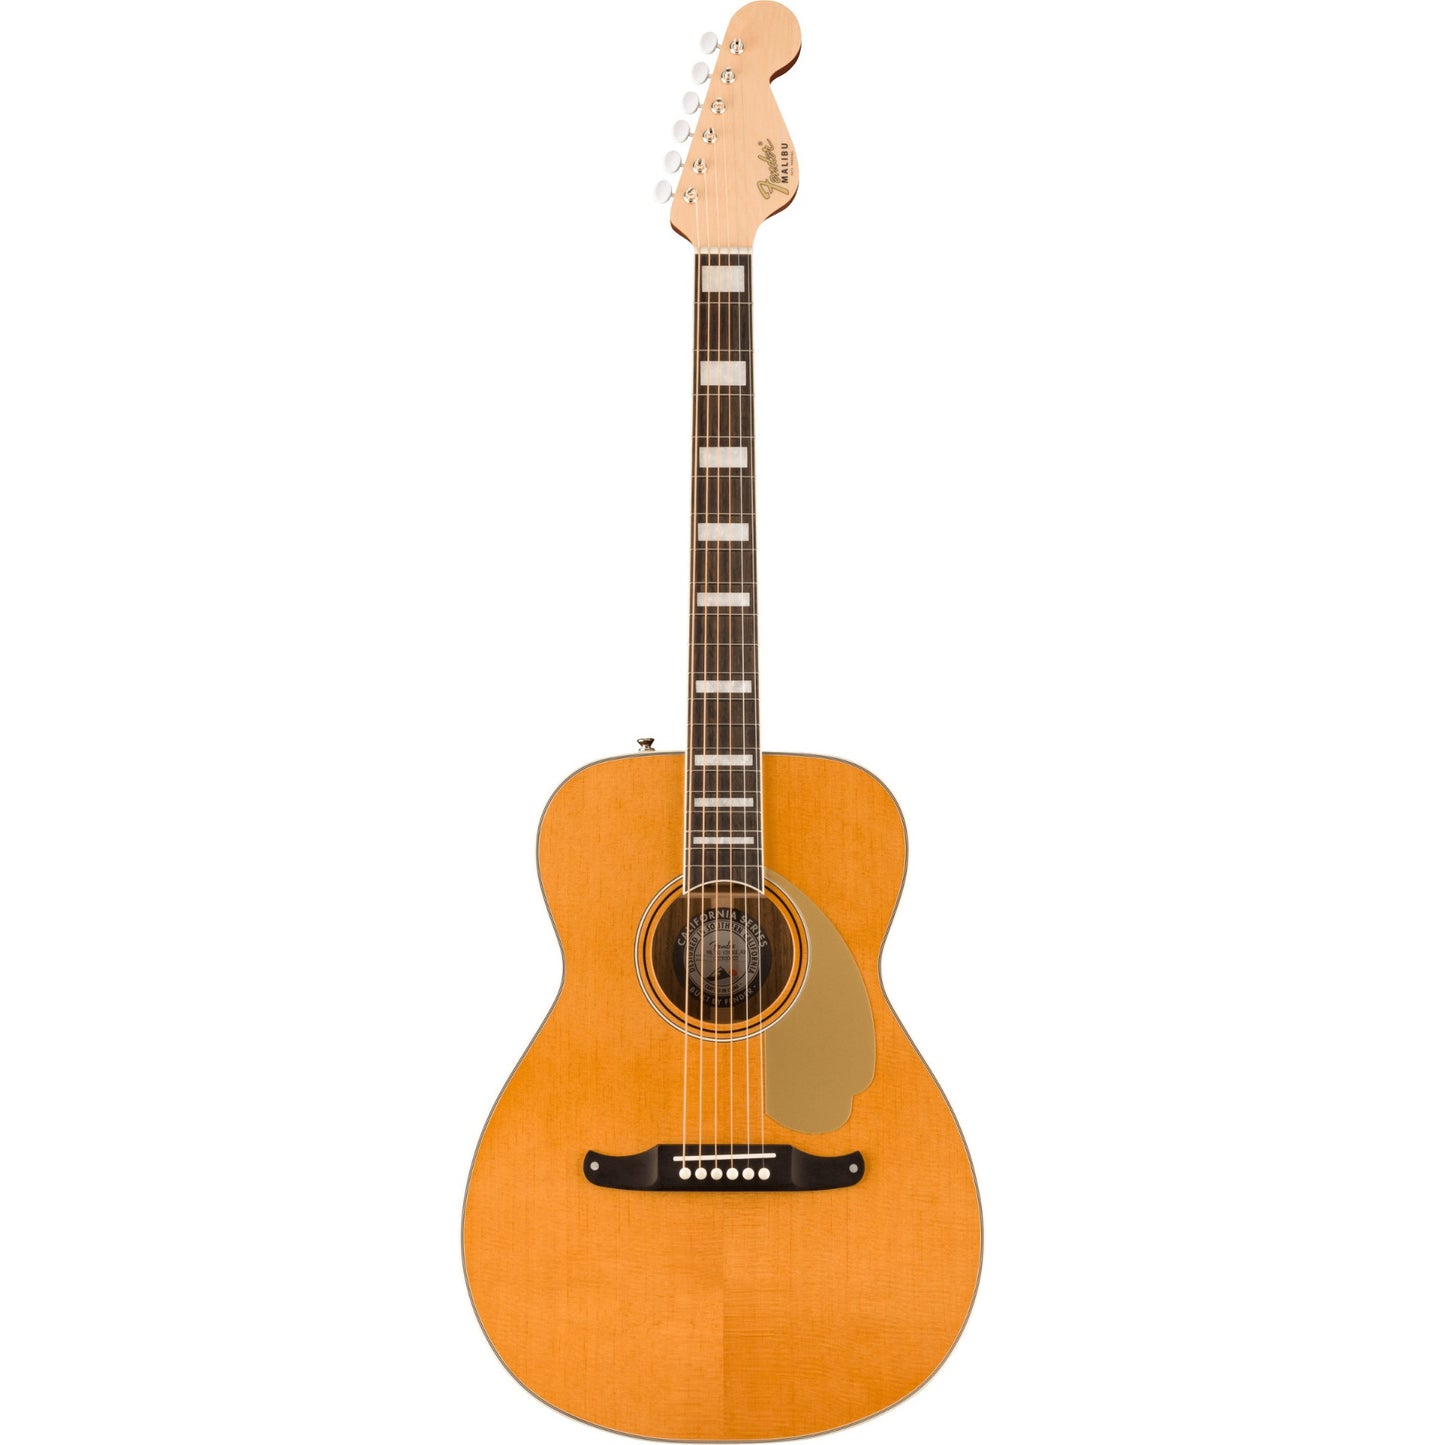 Fender Malibu Vintage Acoustic Electric Guitar - Aged Natural